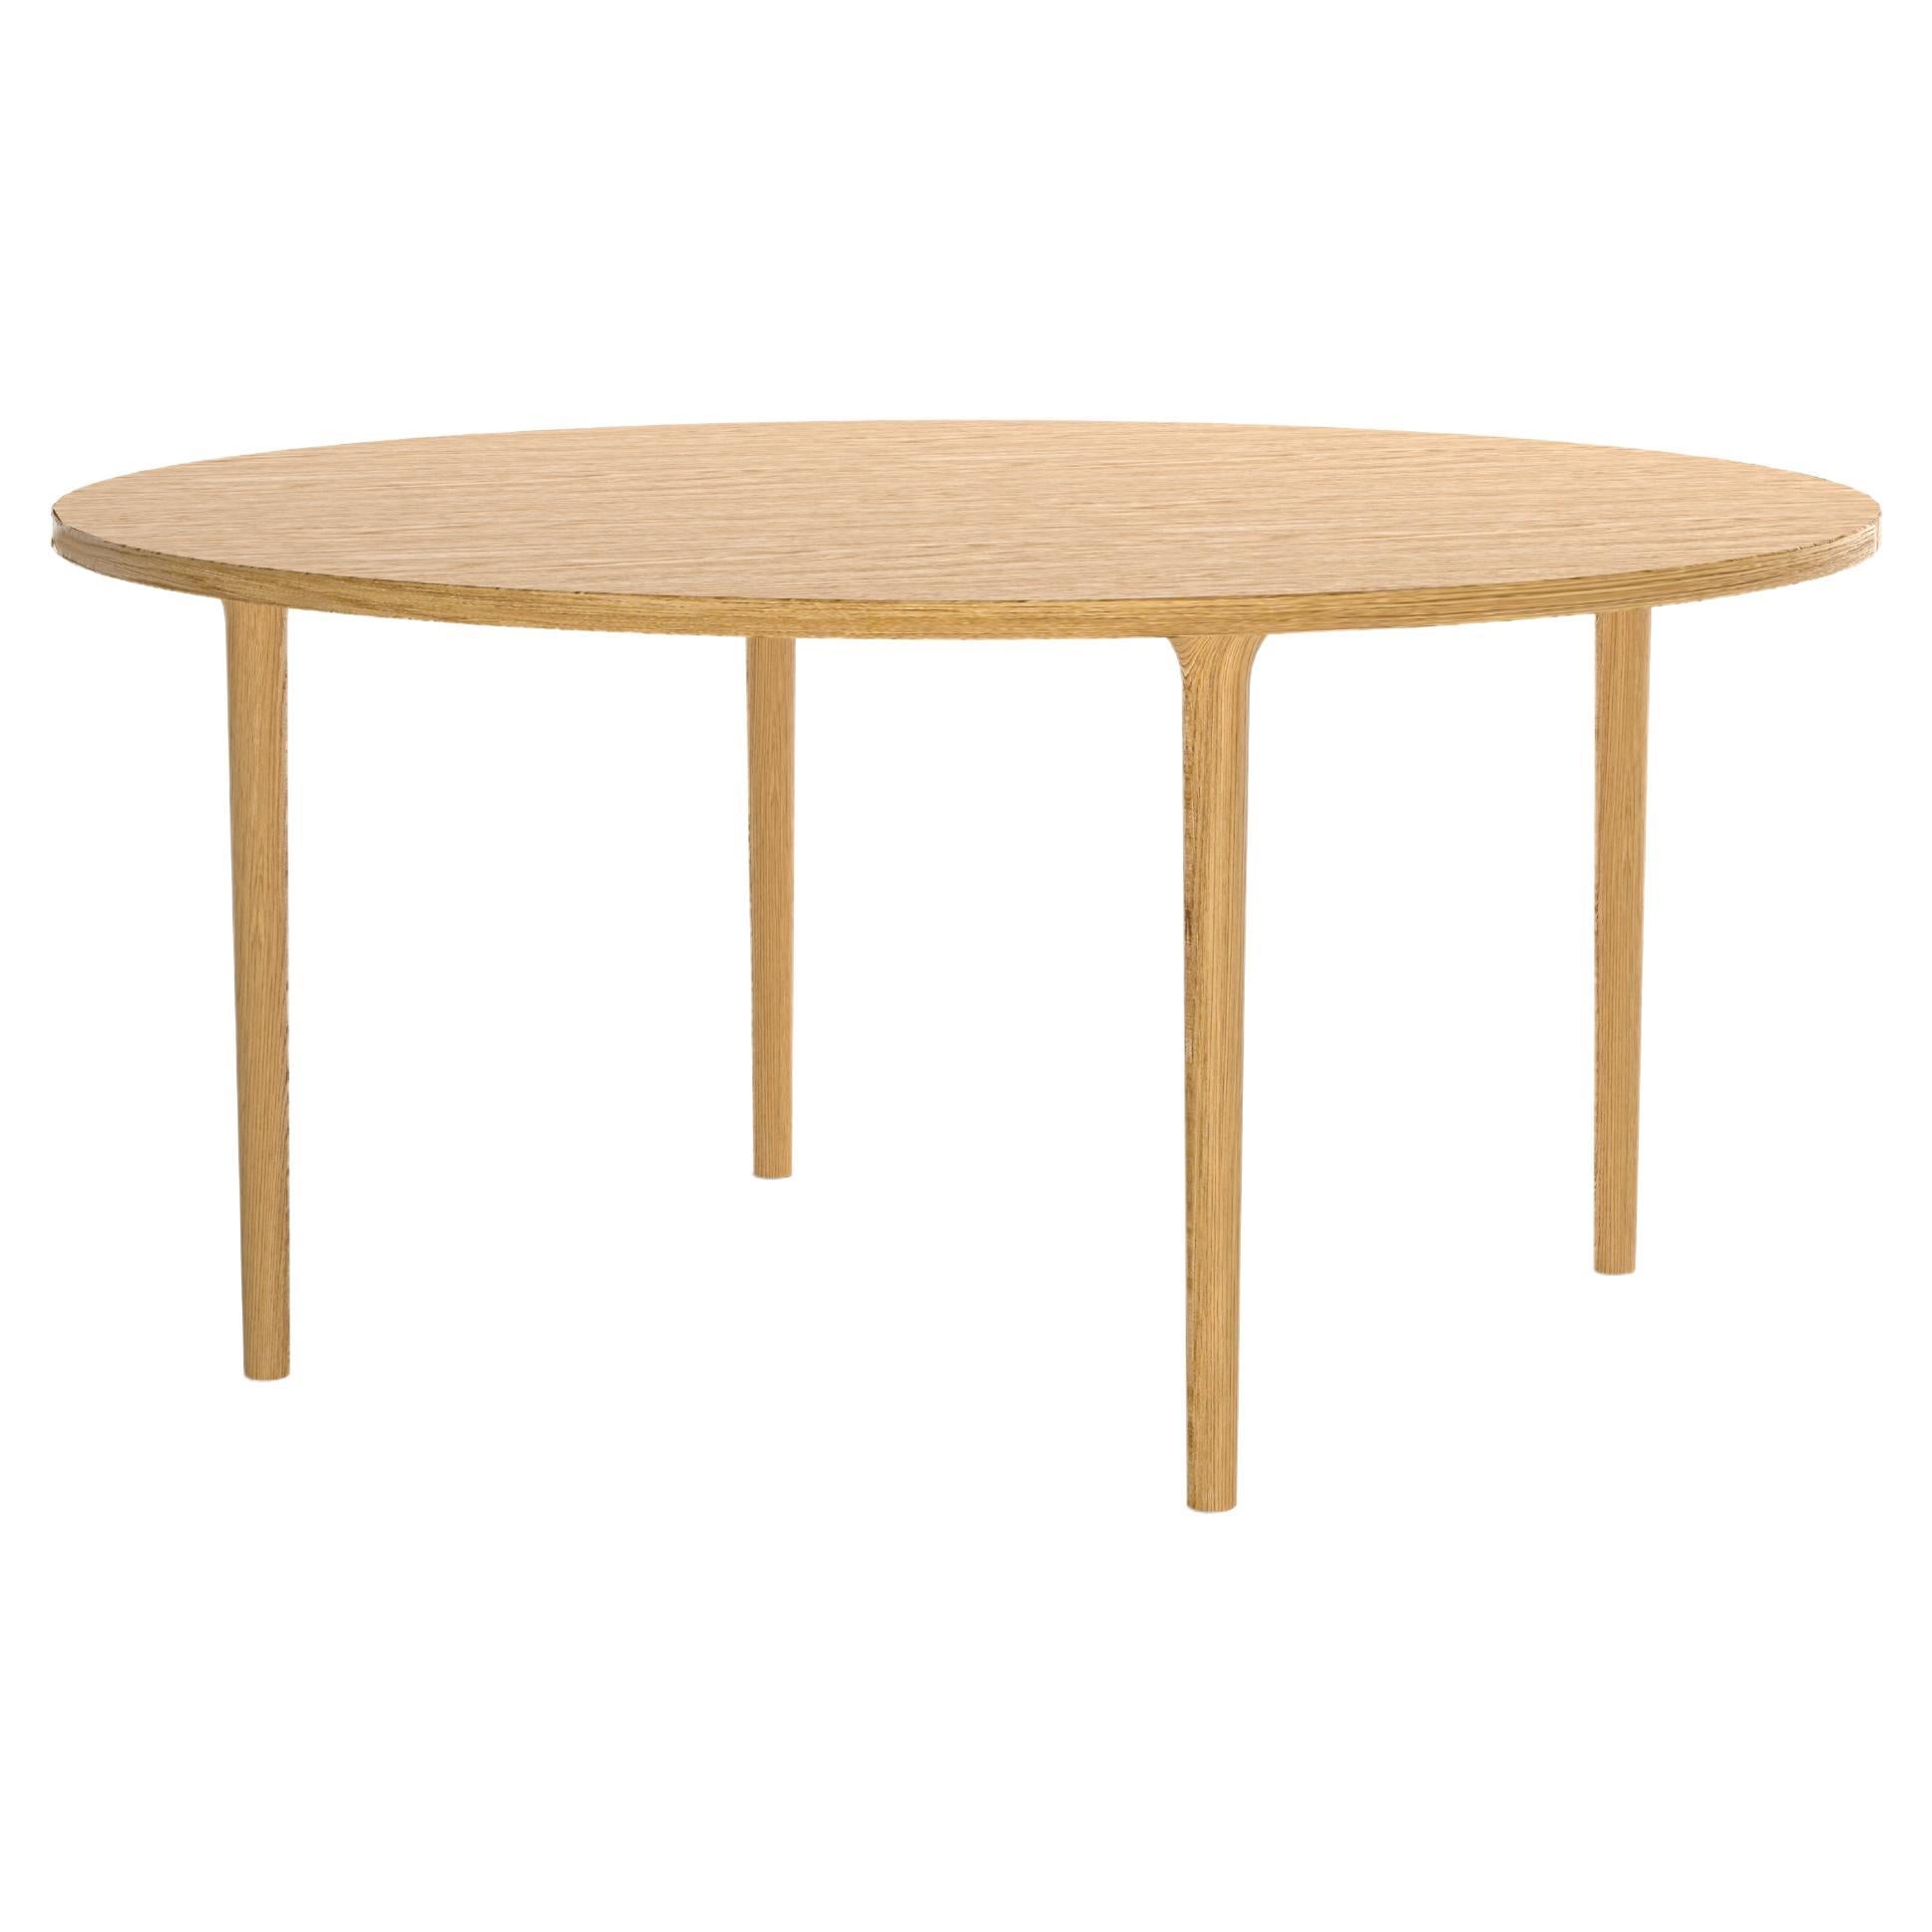 Minimalistischer moderner Tisch aus Eicheholz, rund 160 cm